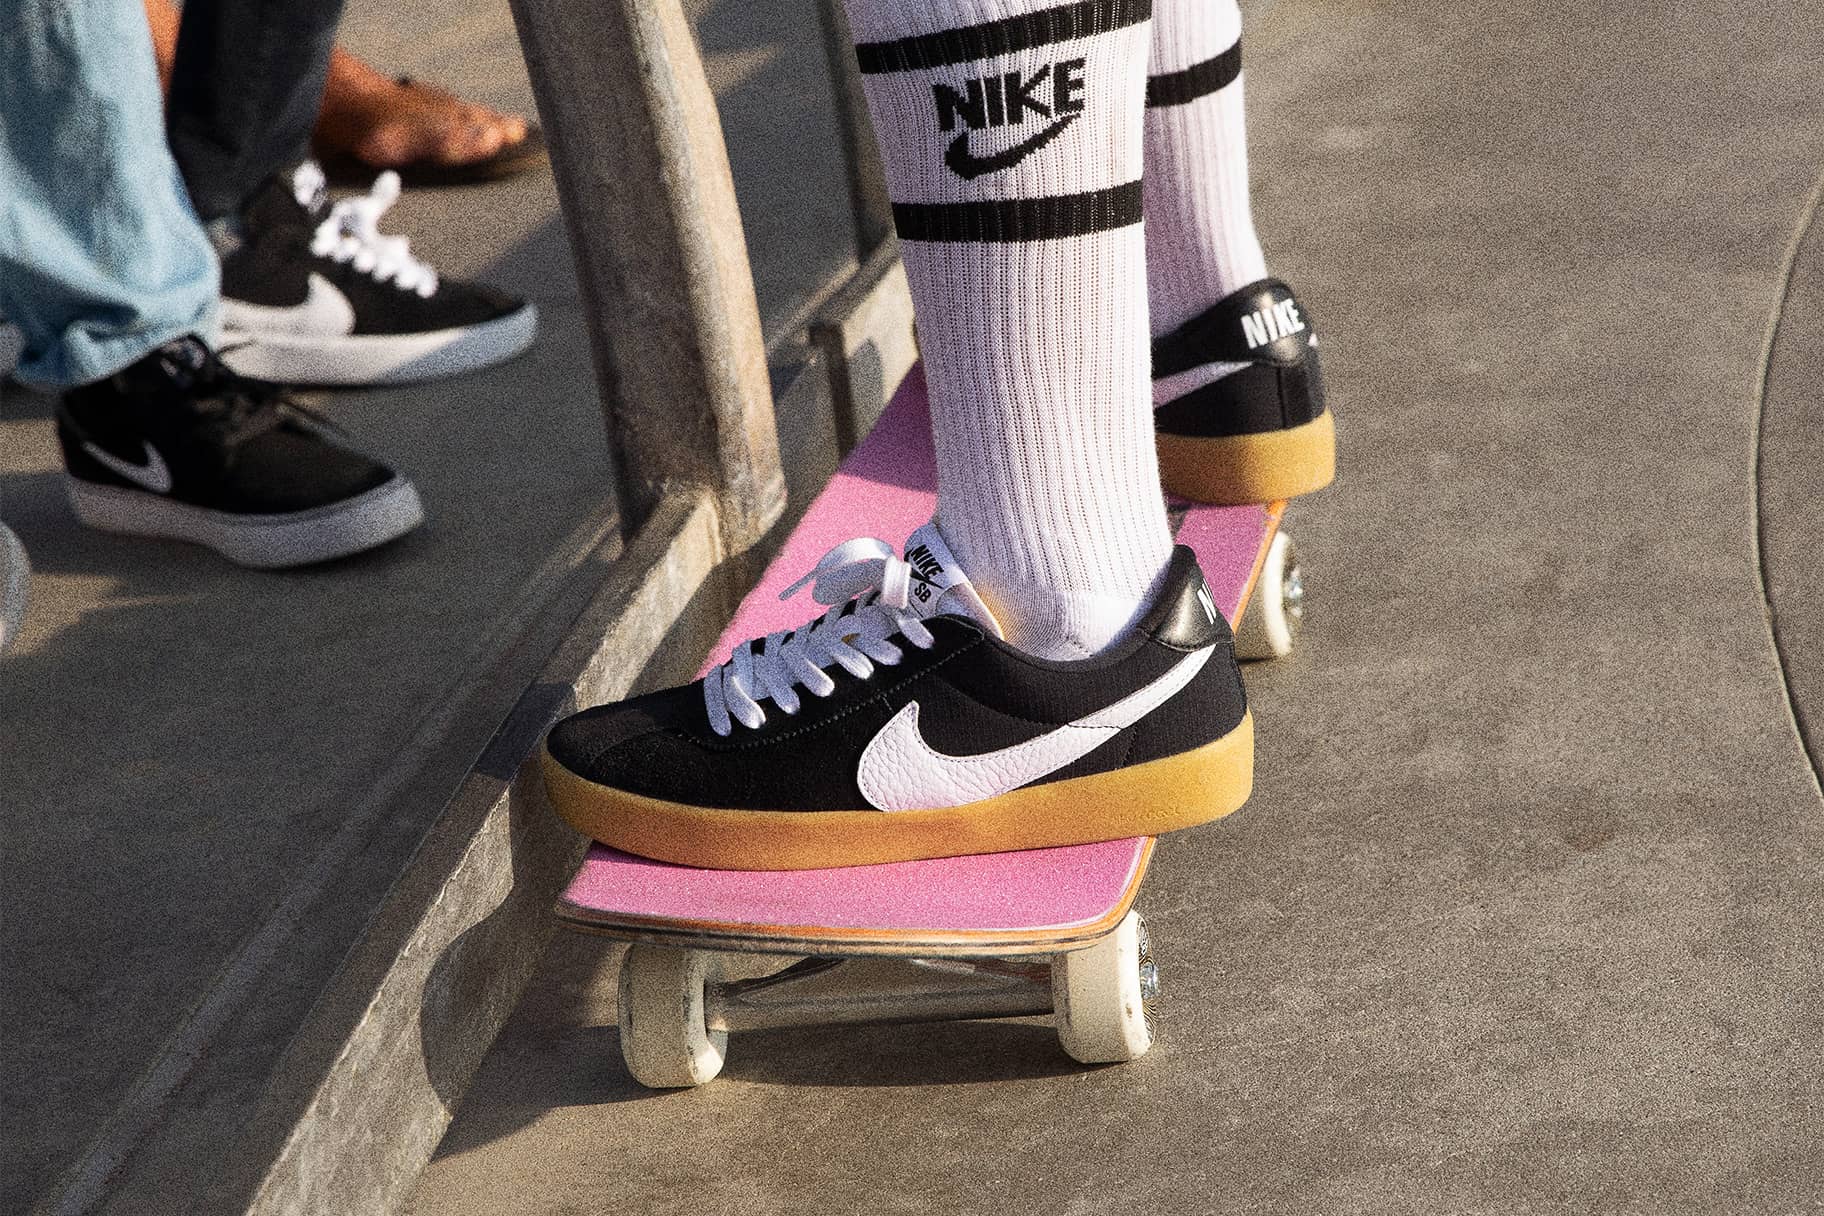 Les meilleures chaussures de skateboard Nike pour des performances optimales